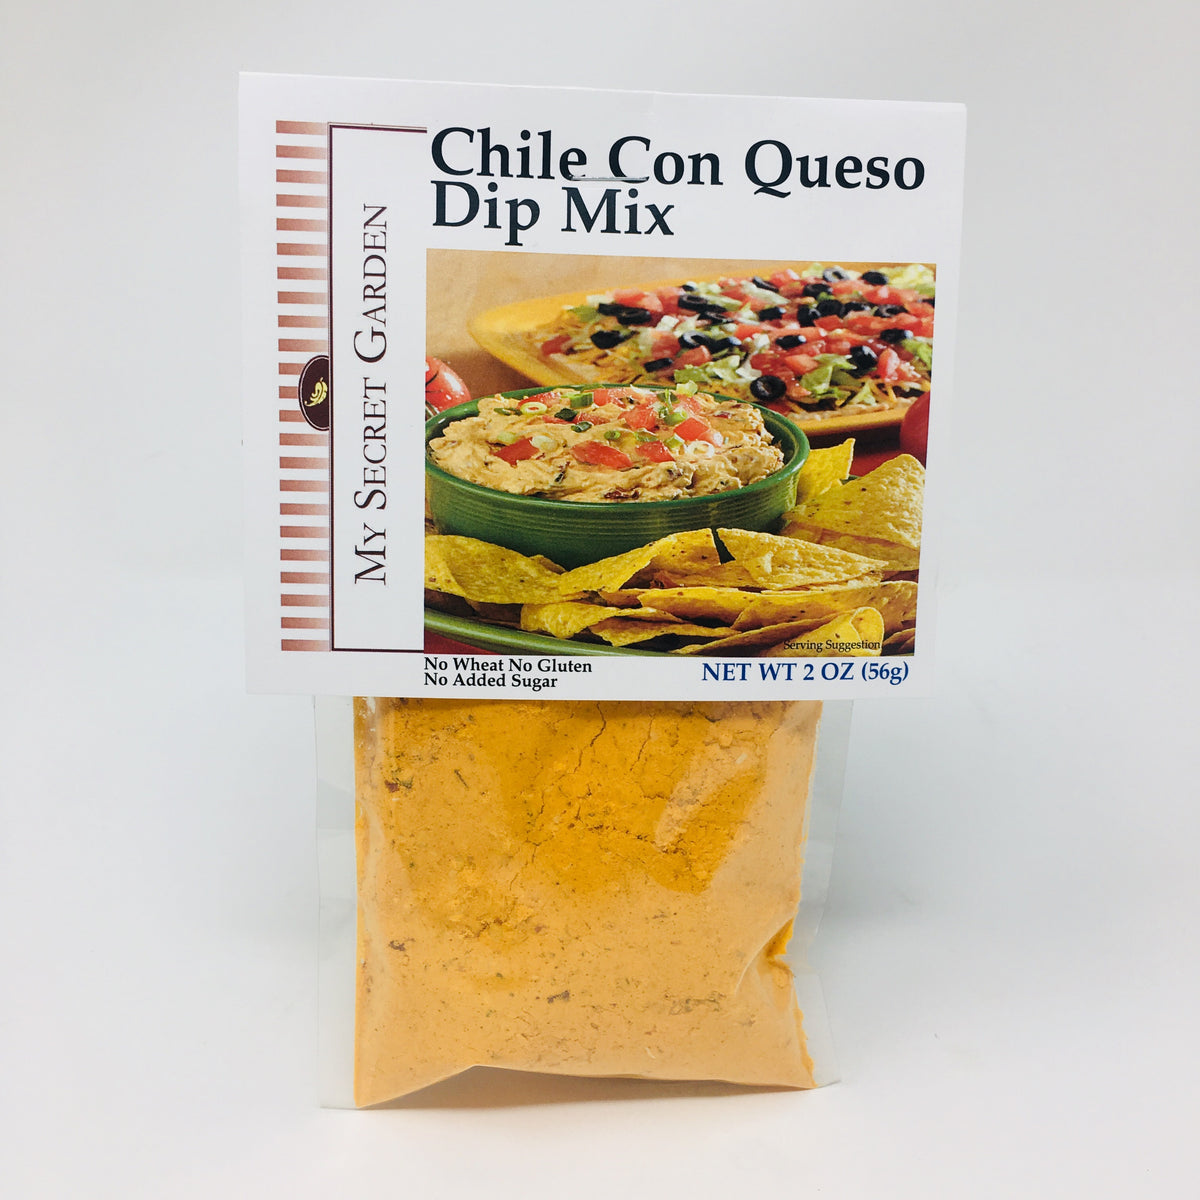 Chile Con Queso Dip Mix